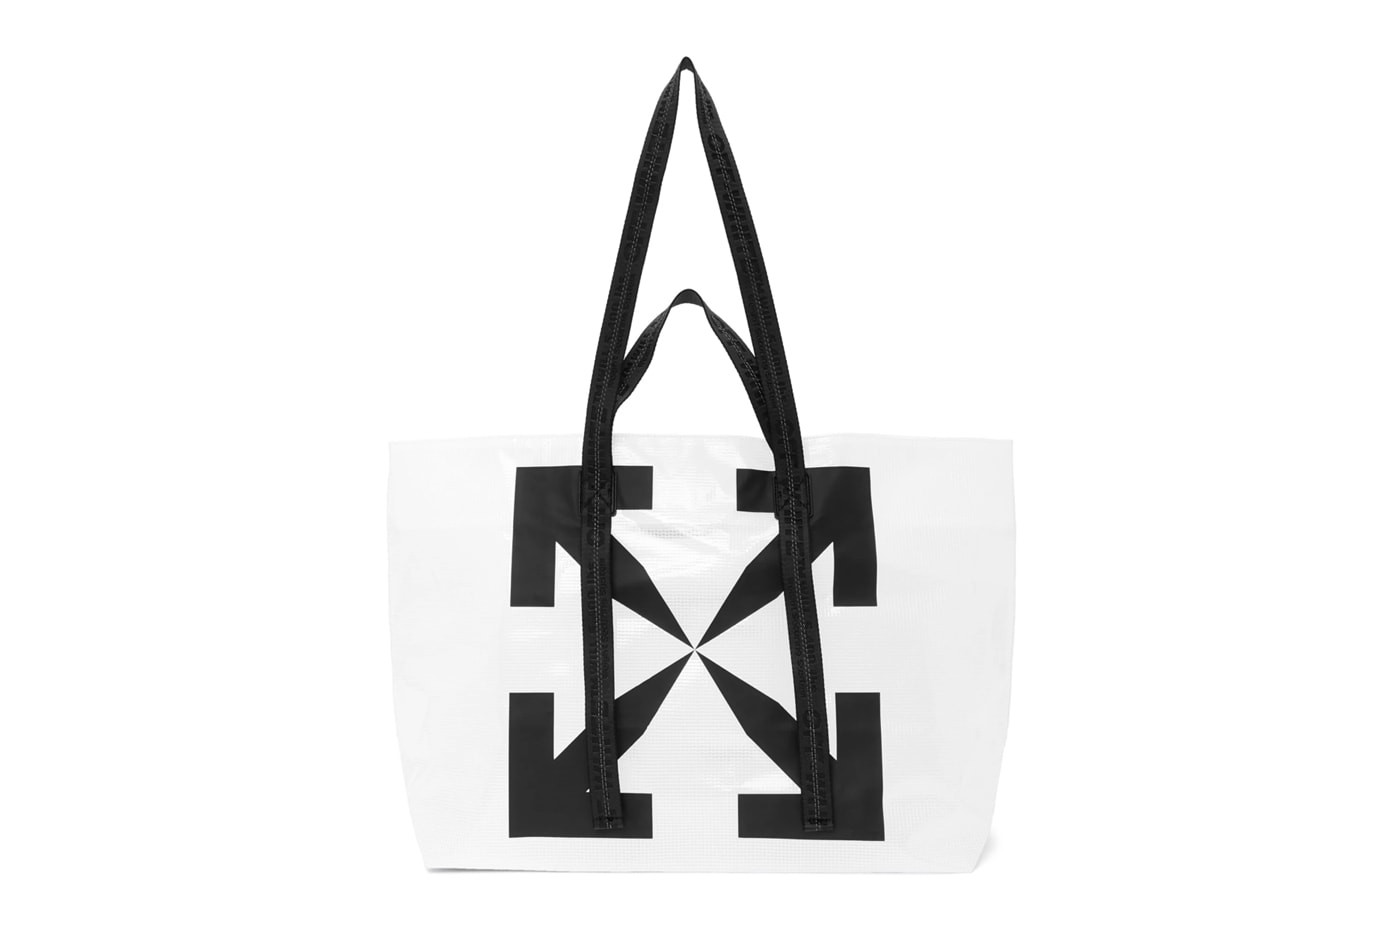 OFF-WHITE Logo Backpack Black/White